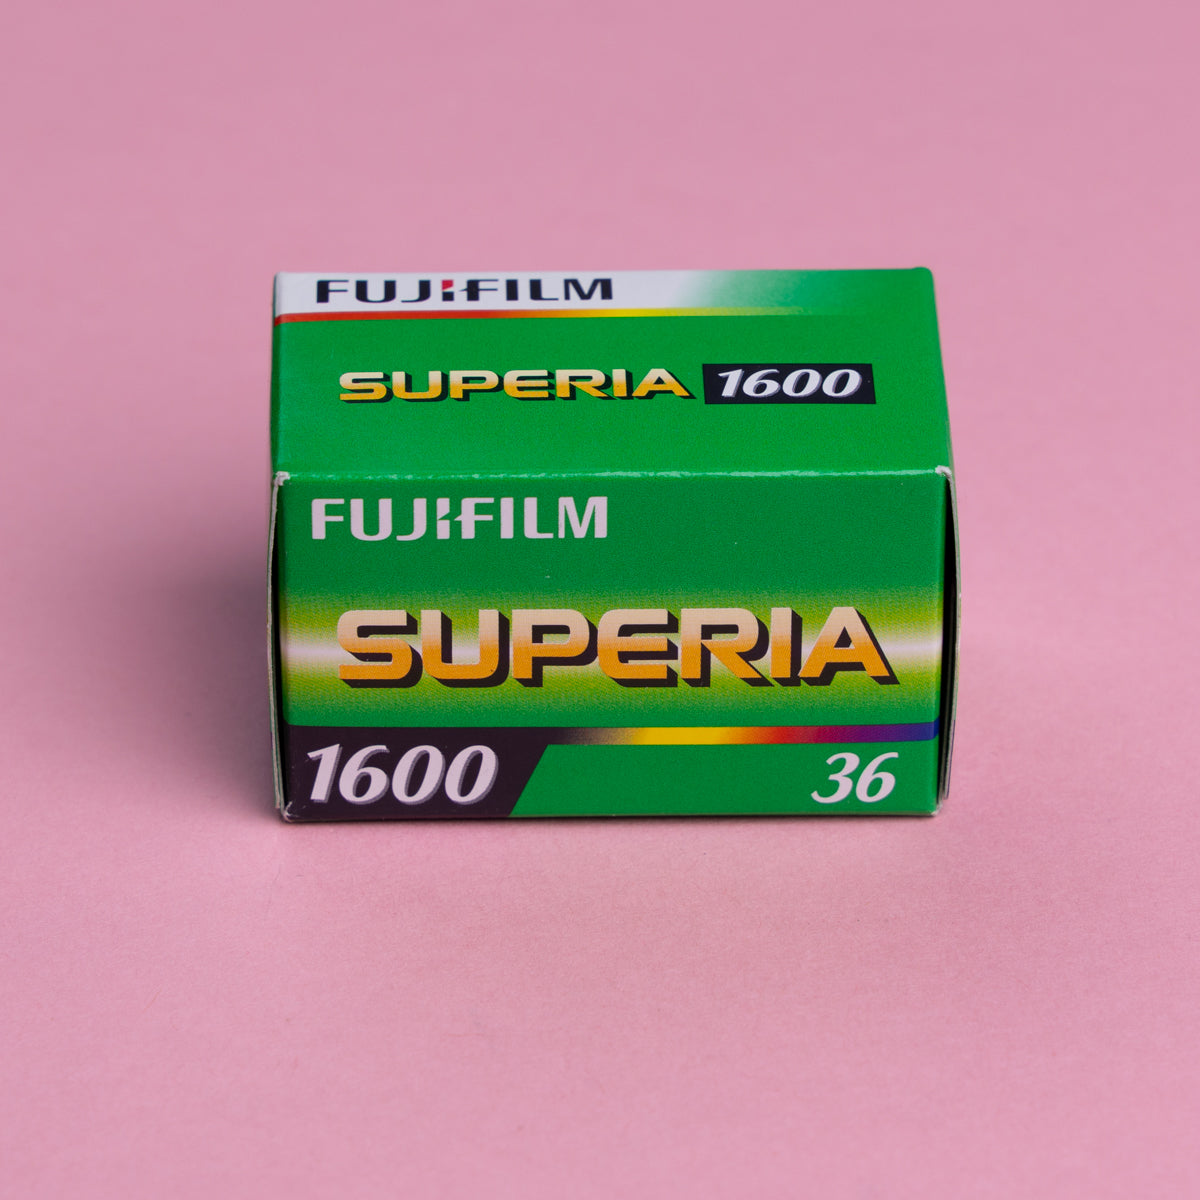 Fuji Superia ISO 1600 36 exp (Expiry 11/2018)